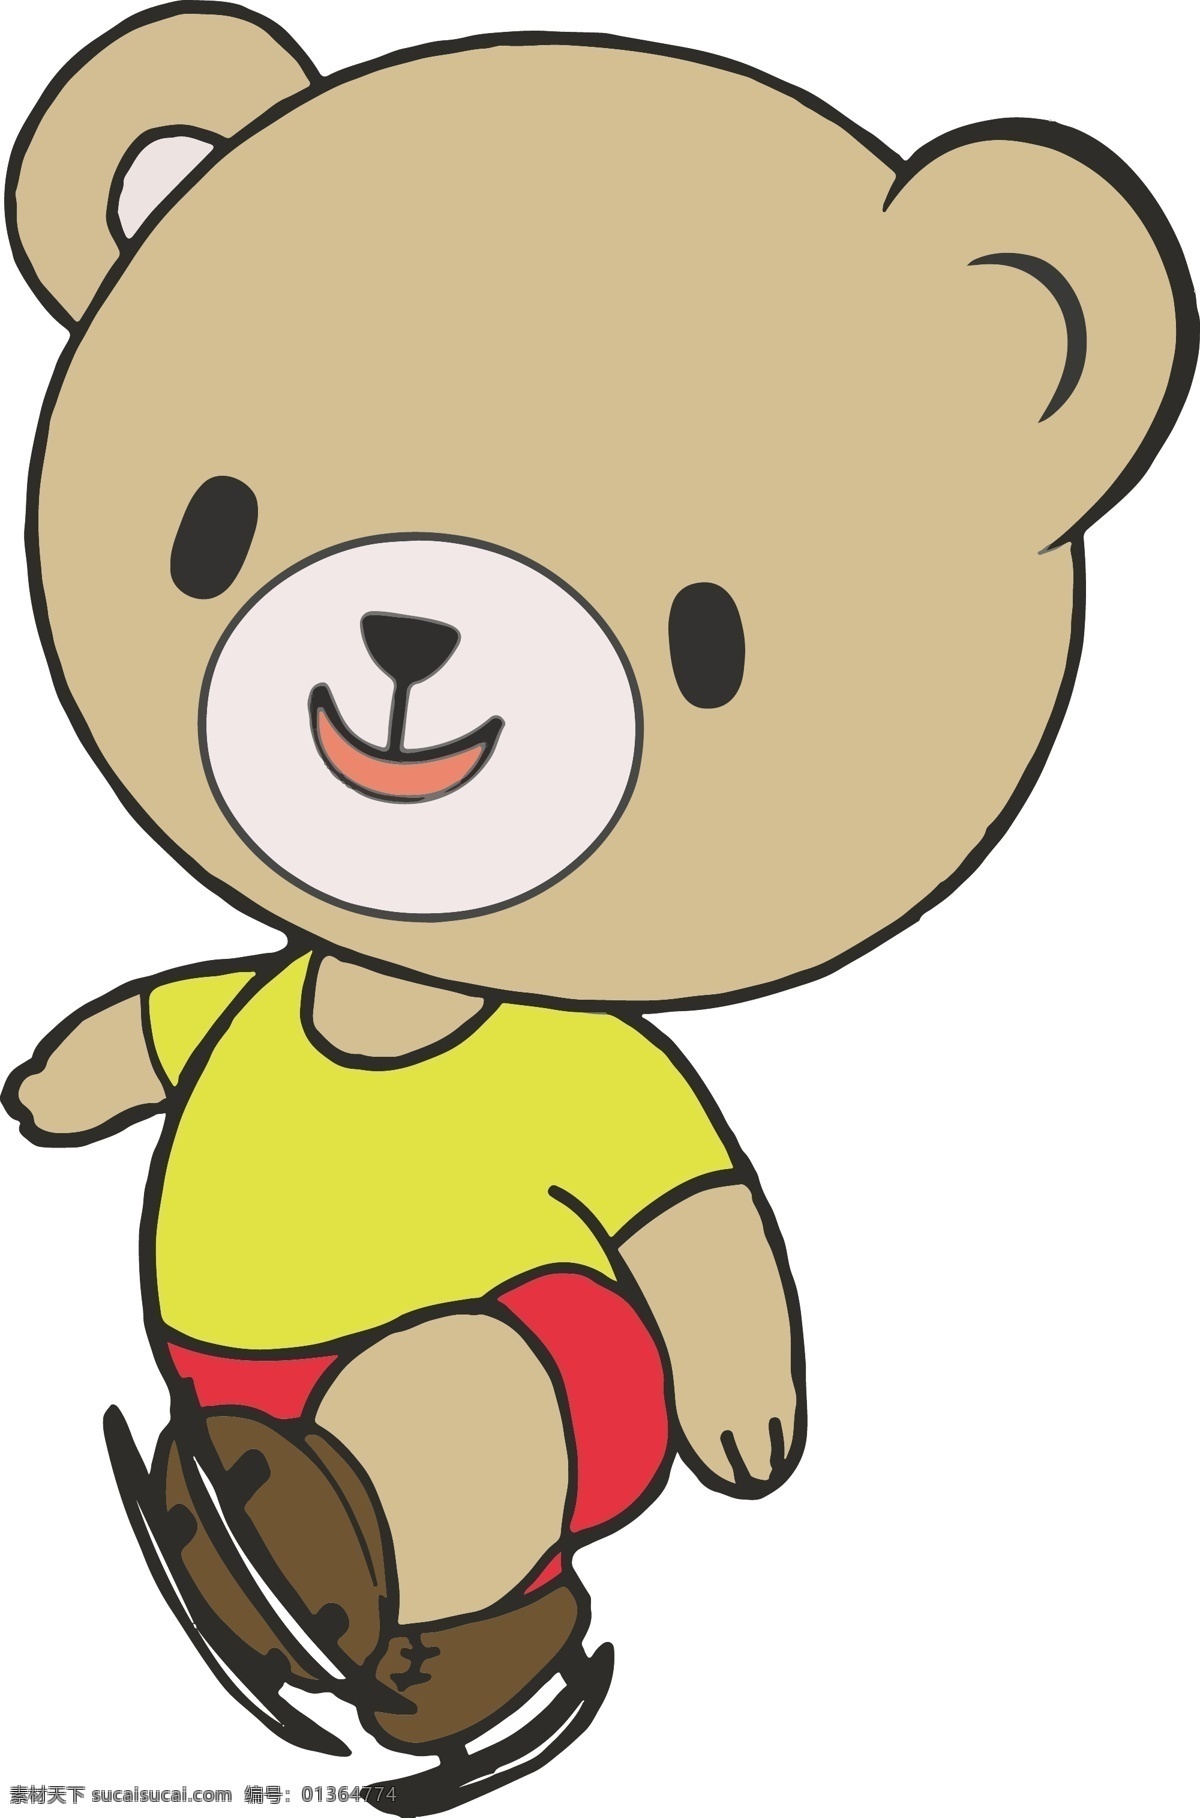 小 熊 卡通 形象 卡通设计 动物设定 游戏人设 卡漫形象 动物卡通 动物手绘漫画 矢量插画 熊卡通 熊漫画 logo 熊设计元素 设计素材矢量 logo设计